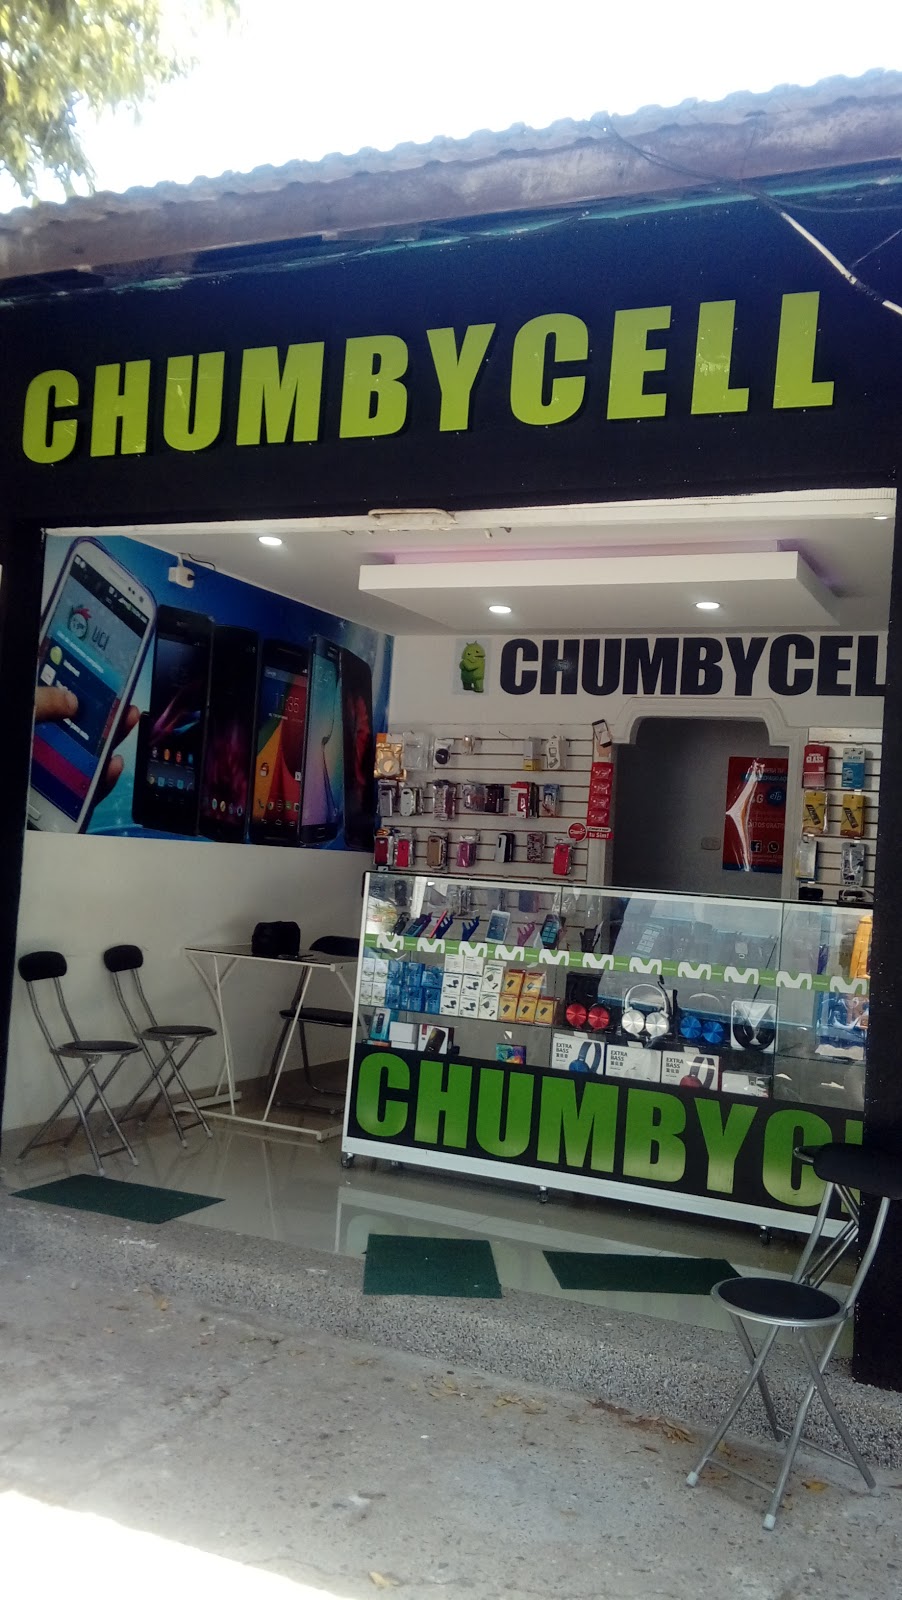 Chumbycell